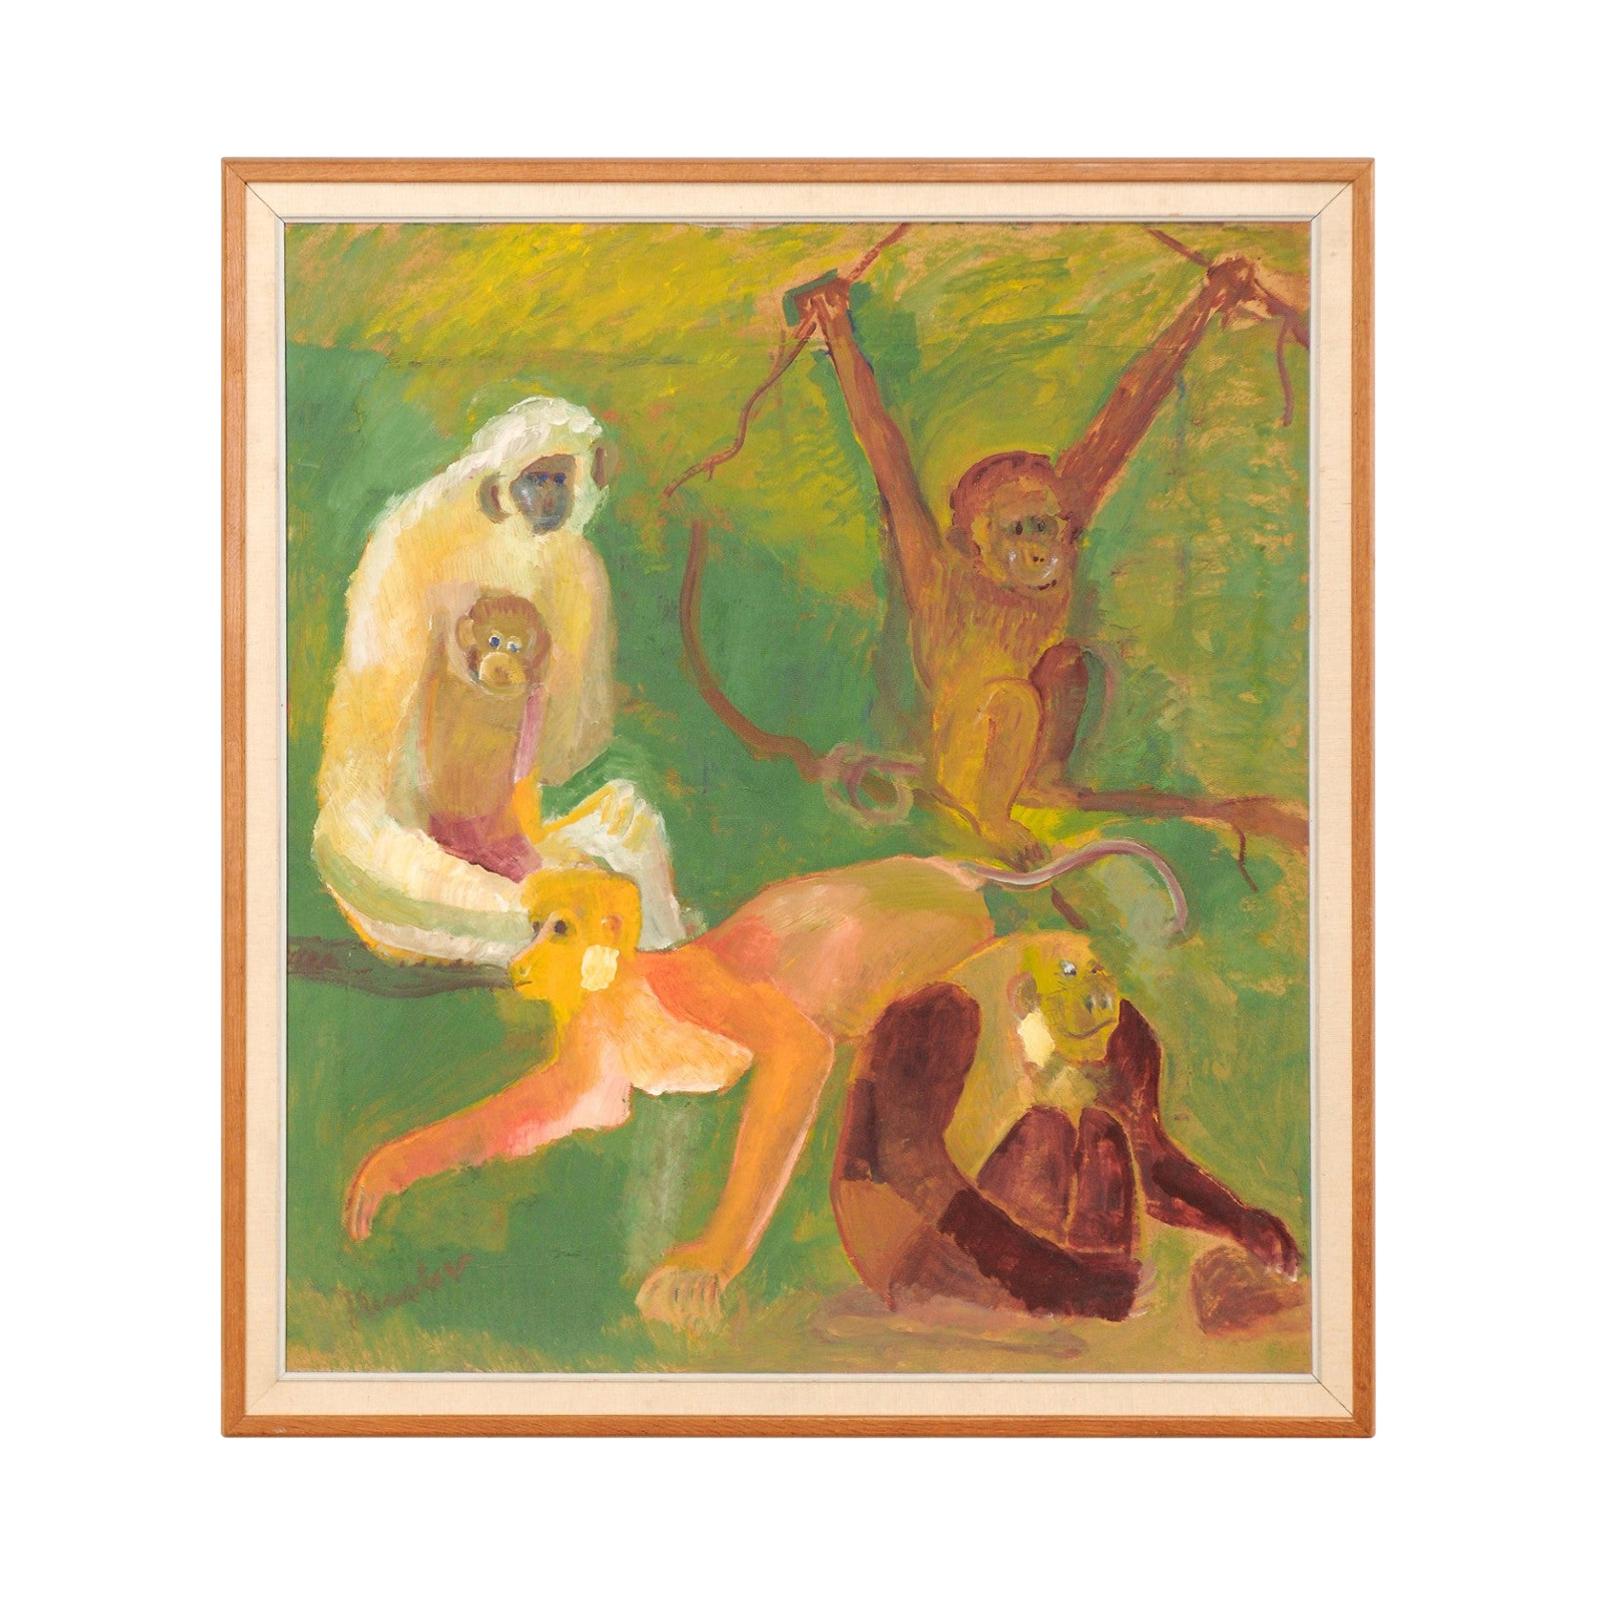 Peinture danoise originale sur toile à l'huile du début du 20e siècle représentant des singes